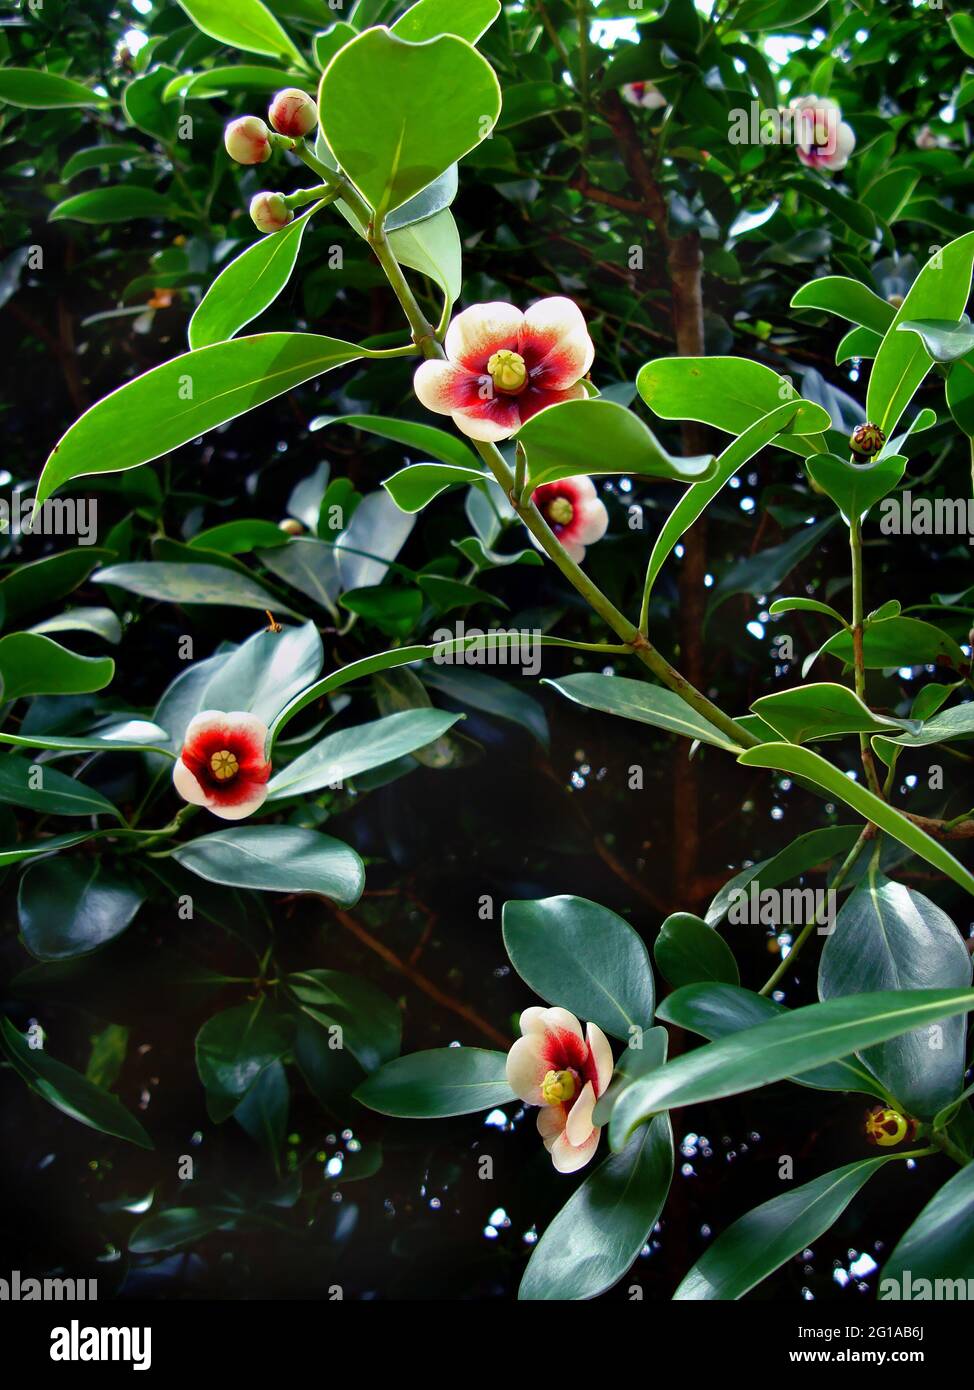 Clusia flowers on tree (Clusia lanceolata) Stock Photo